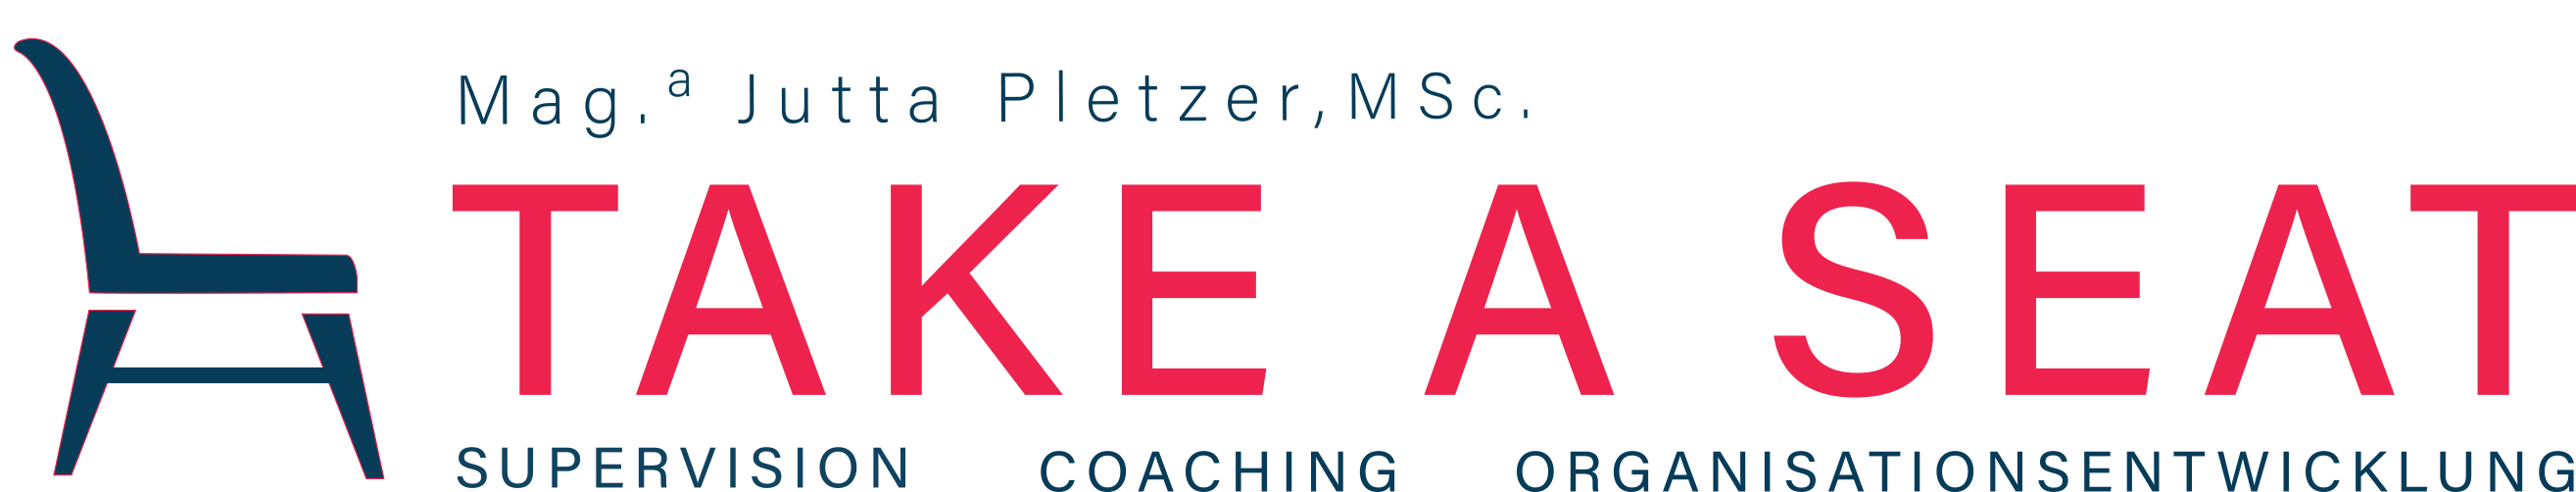 take-a-seat-logo